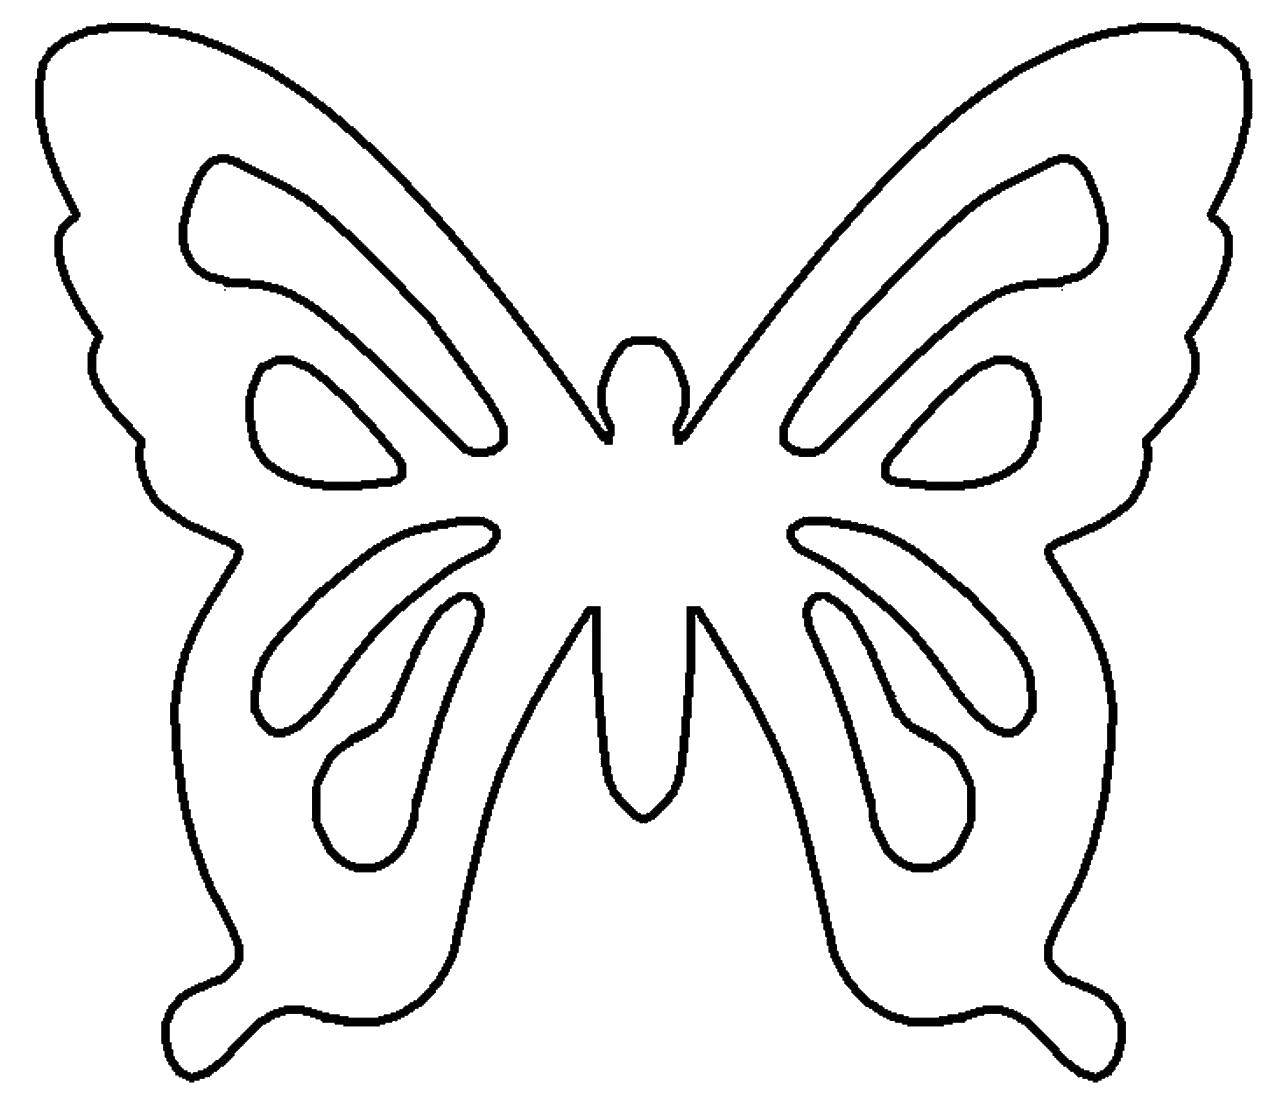 Название: Раскраска Контур бабочки для вырезания. Категория: контуры для вырезания бабочек. Теги: контуры, шаблоны, бабочки.